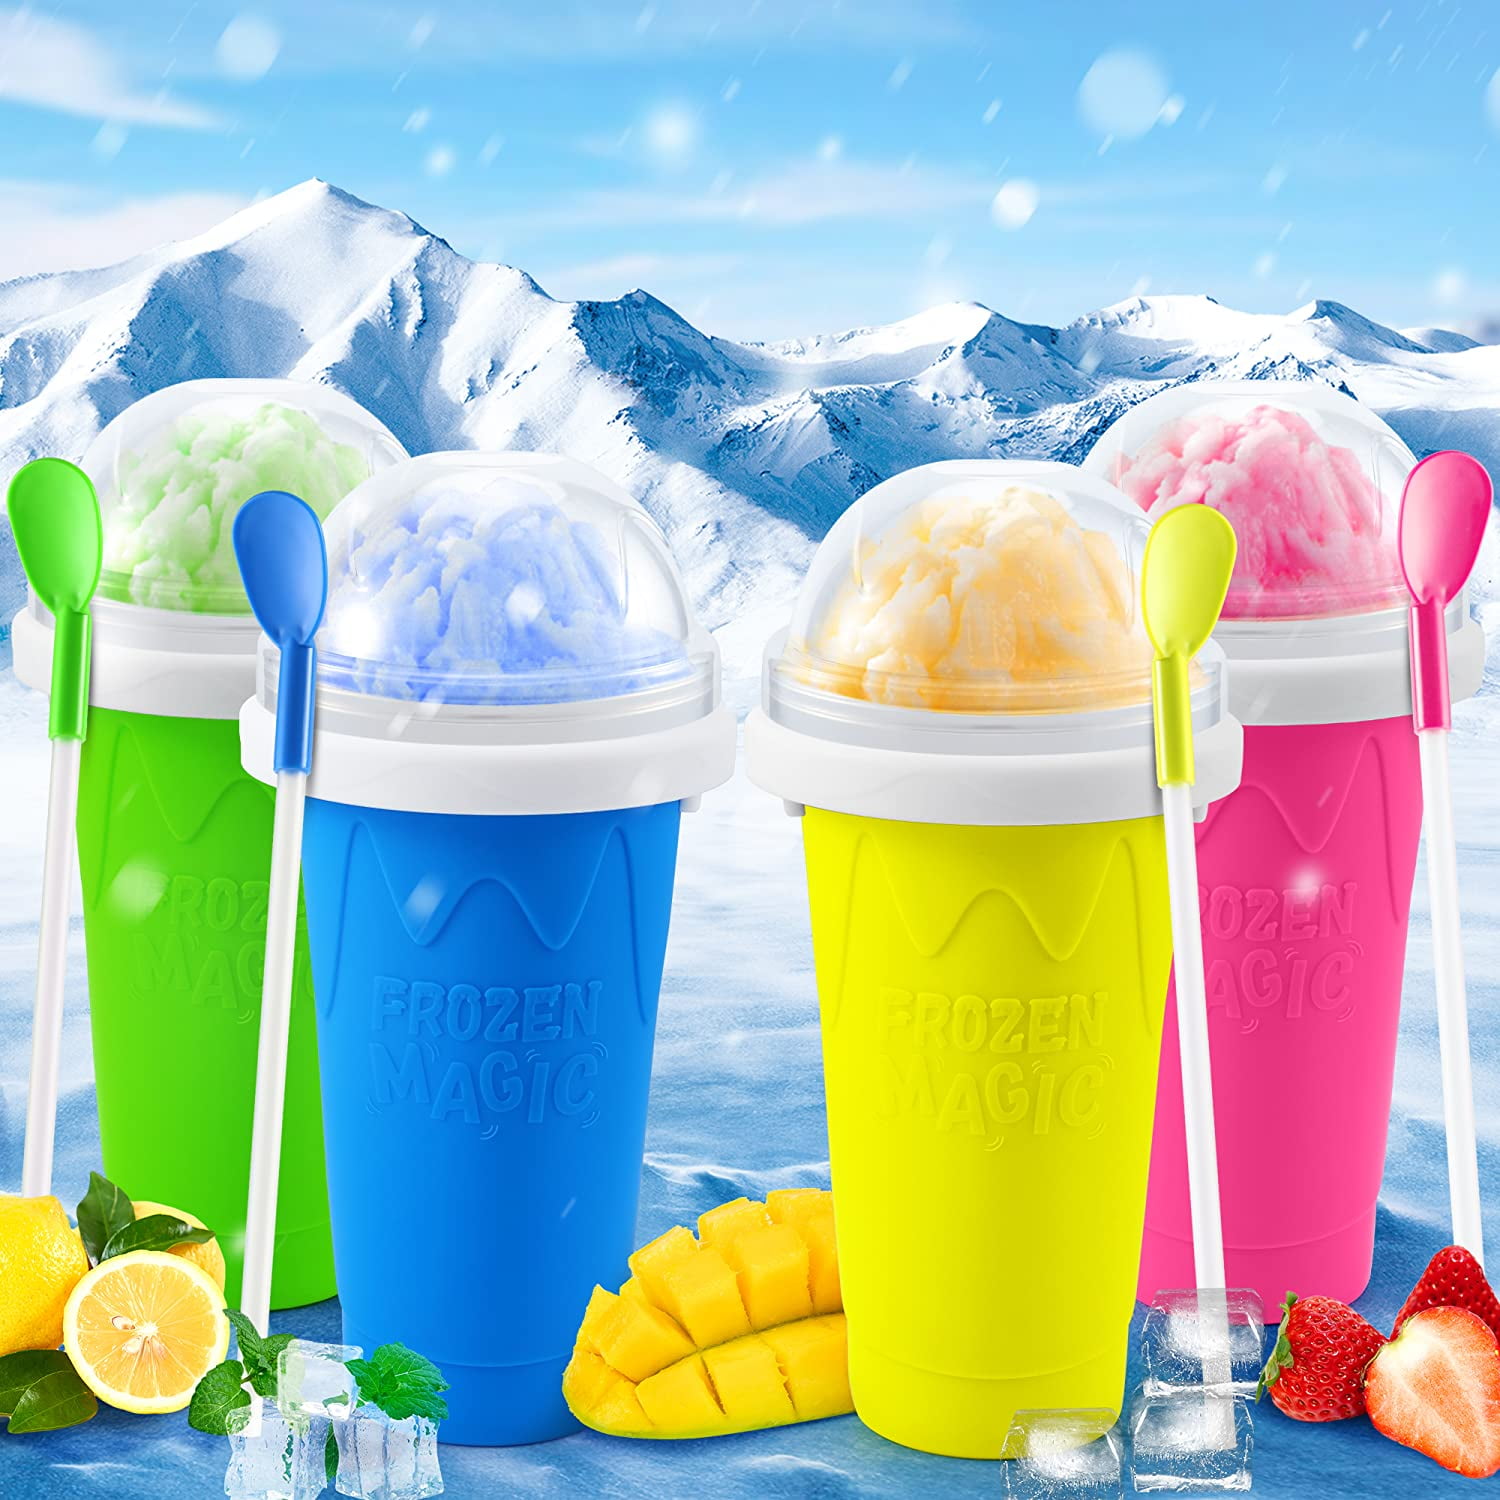 Frozen Squeeze Cooler Mug 150Ml Spill-Proof Smoothie Cup For Ice Cream  Making Summer Diy Smoothie Mug Cooling Maker Cup Freeze Mug Home Milkshake  Juice Mug 